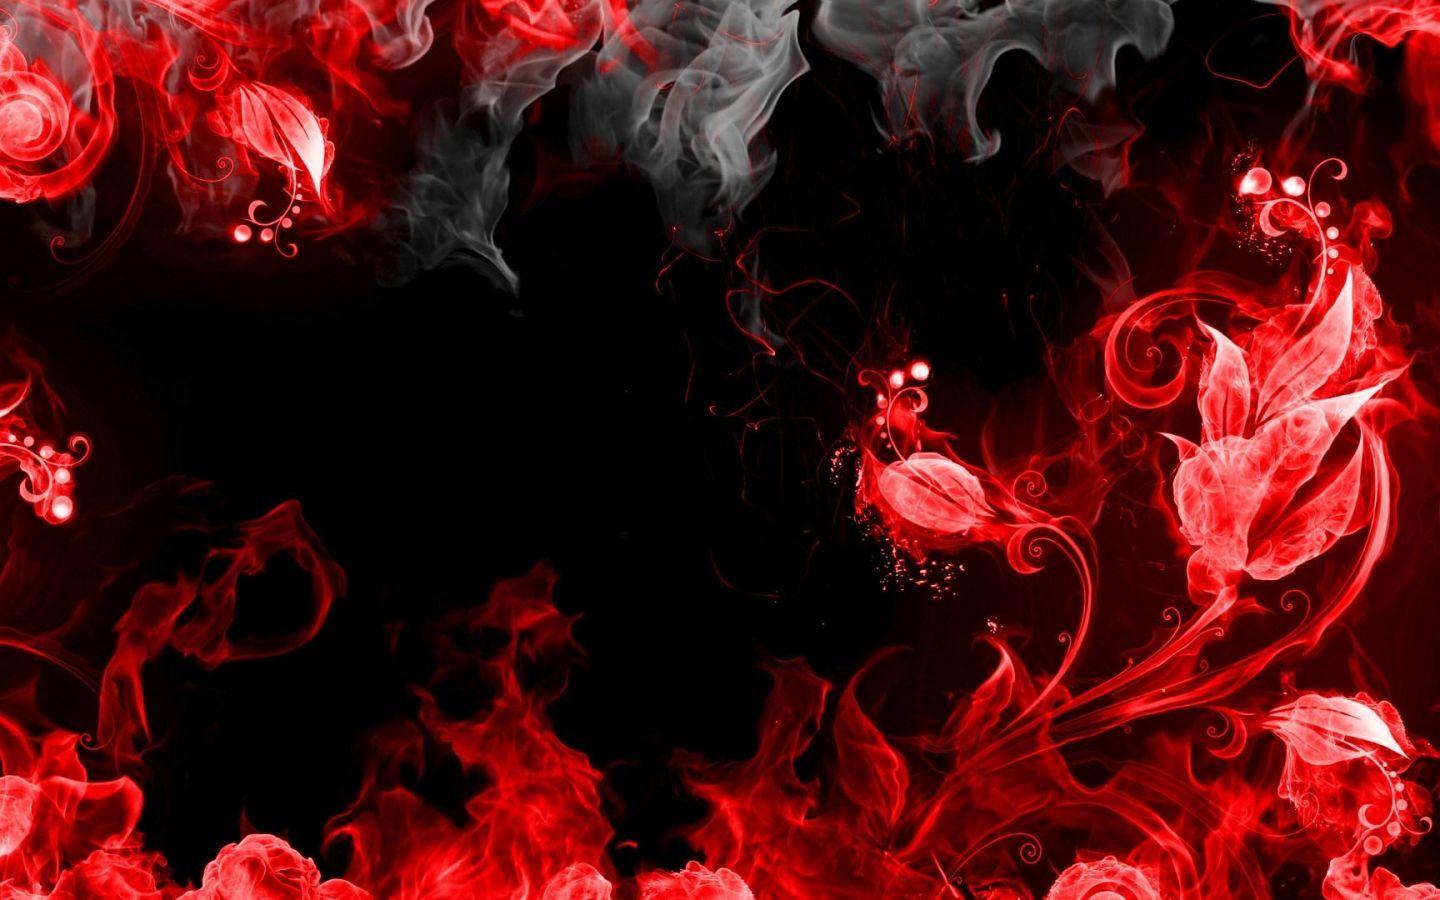 Black Red Abstract Wallpaper. Smoke Wallpaper, Fire Flower, Fire Art